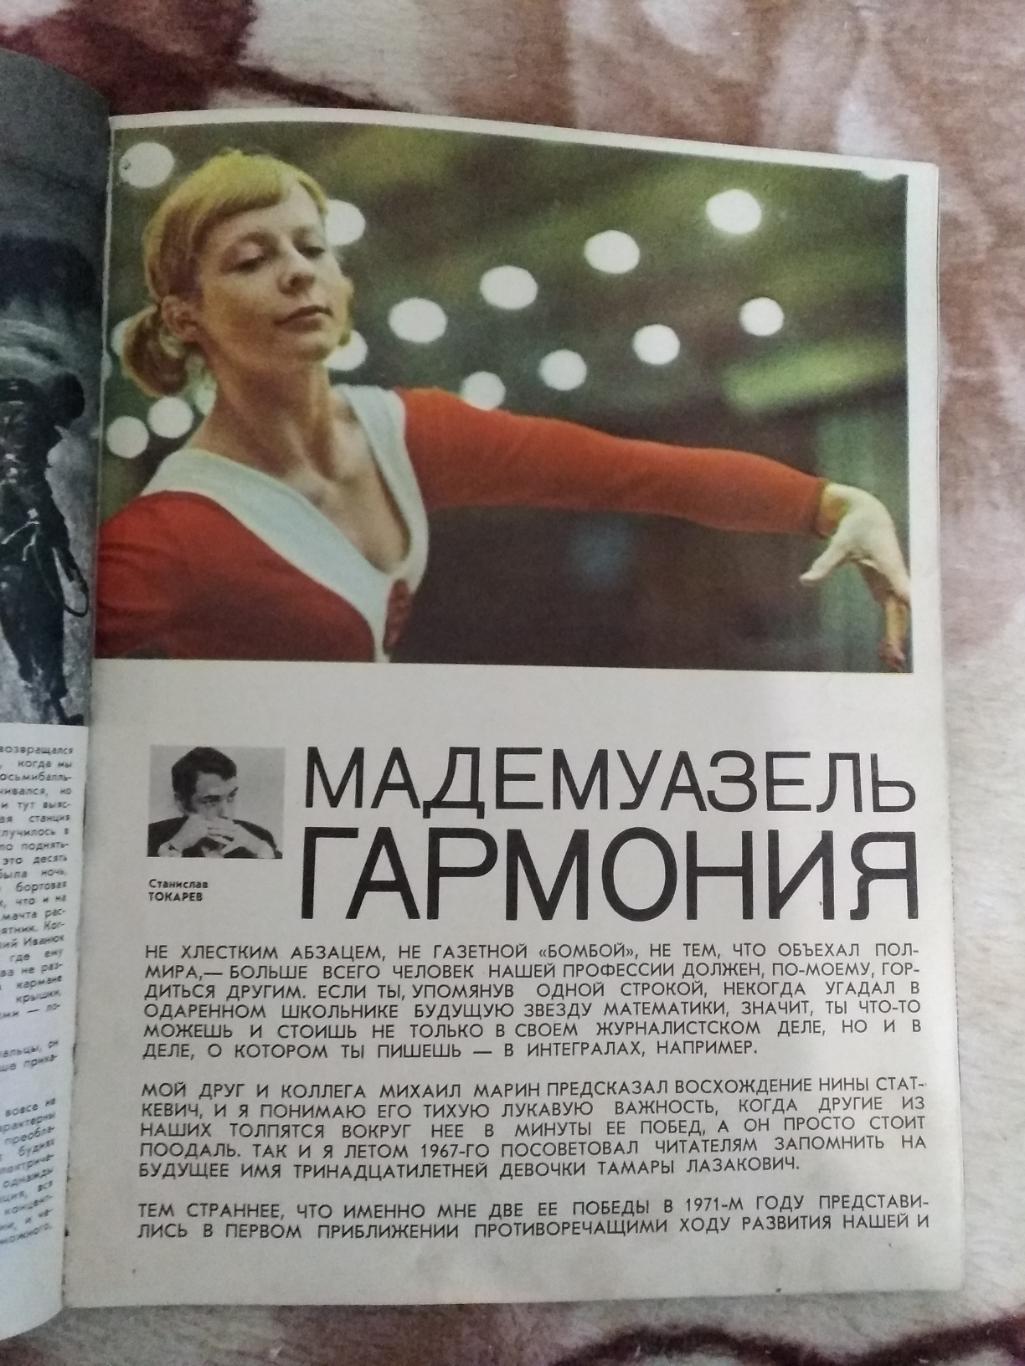 Журнал.Физкультура и спорт № 2 1972 г. (ФиС). 4